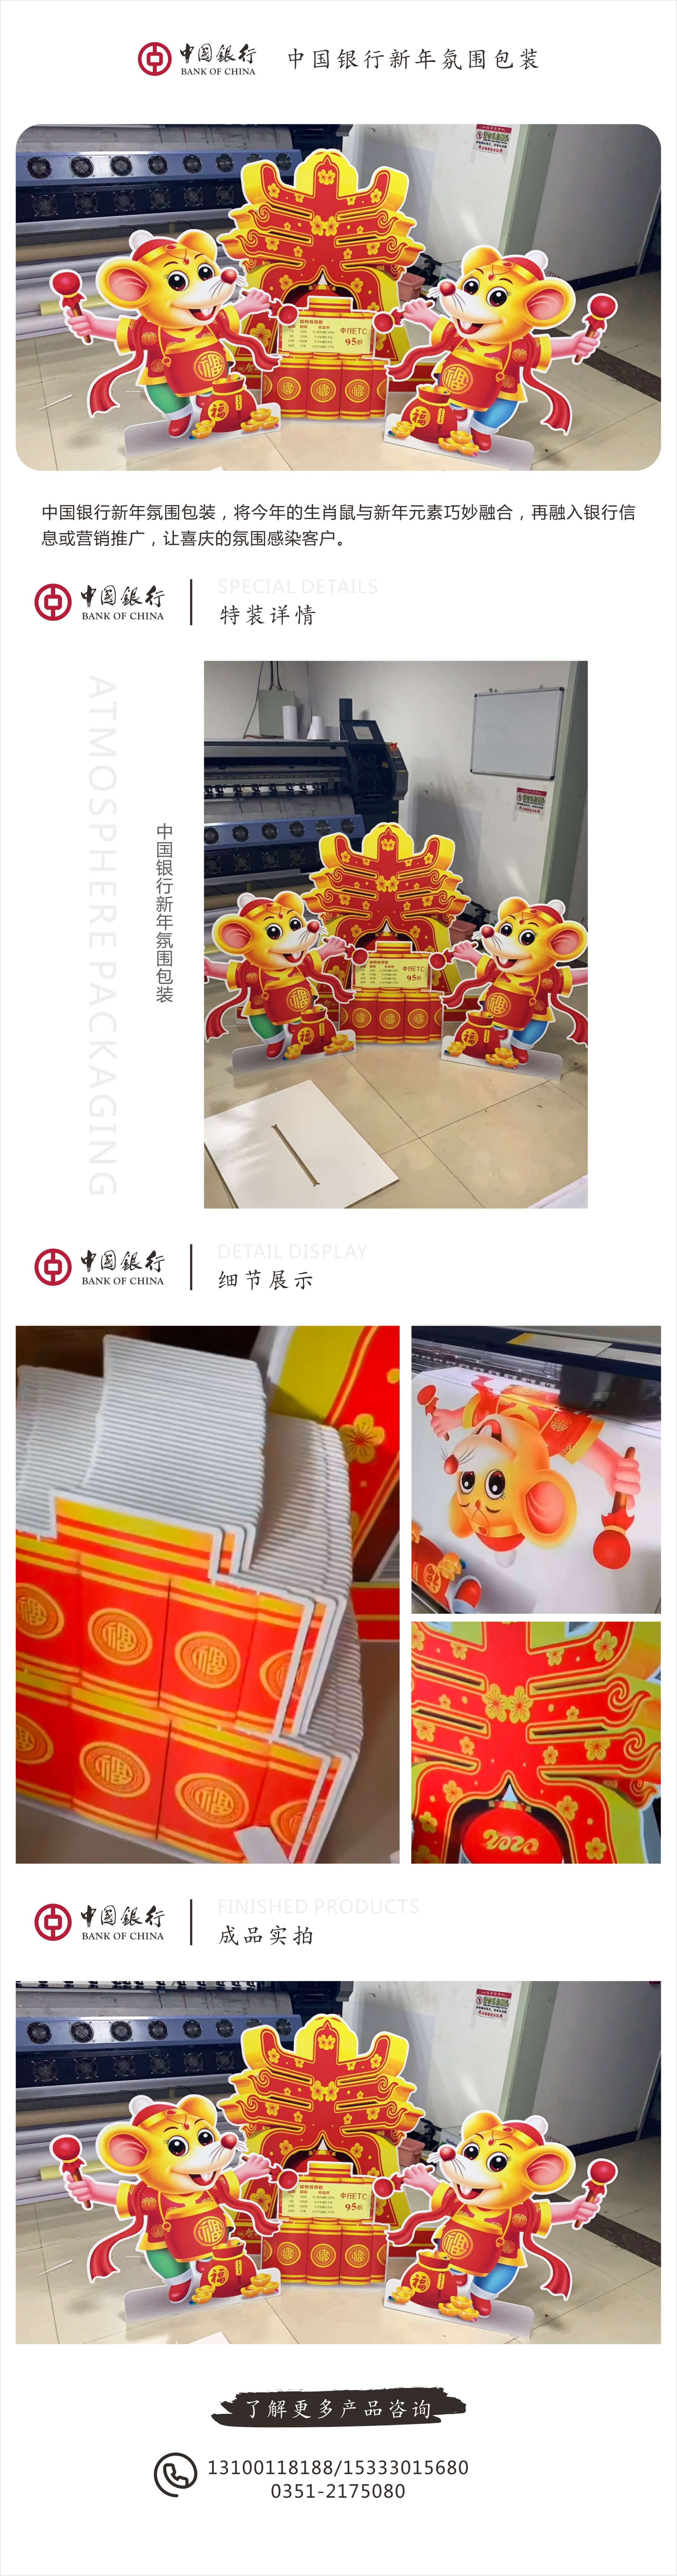 中国银行新年氛围包装.jpg